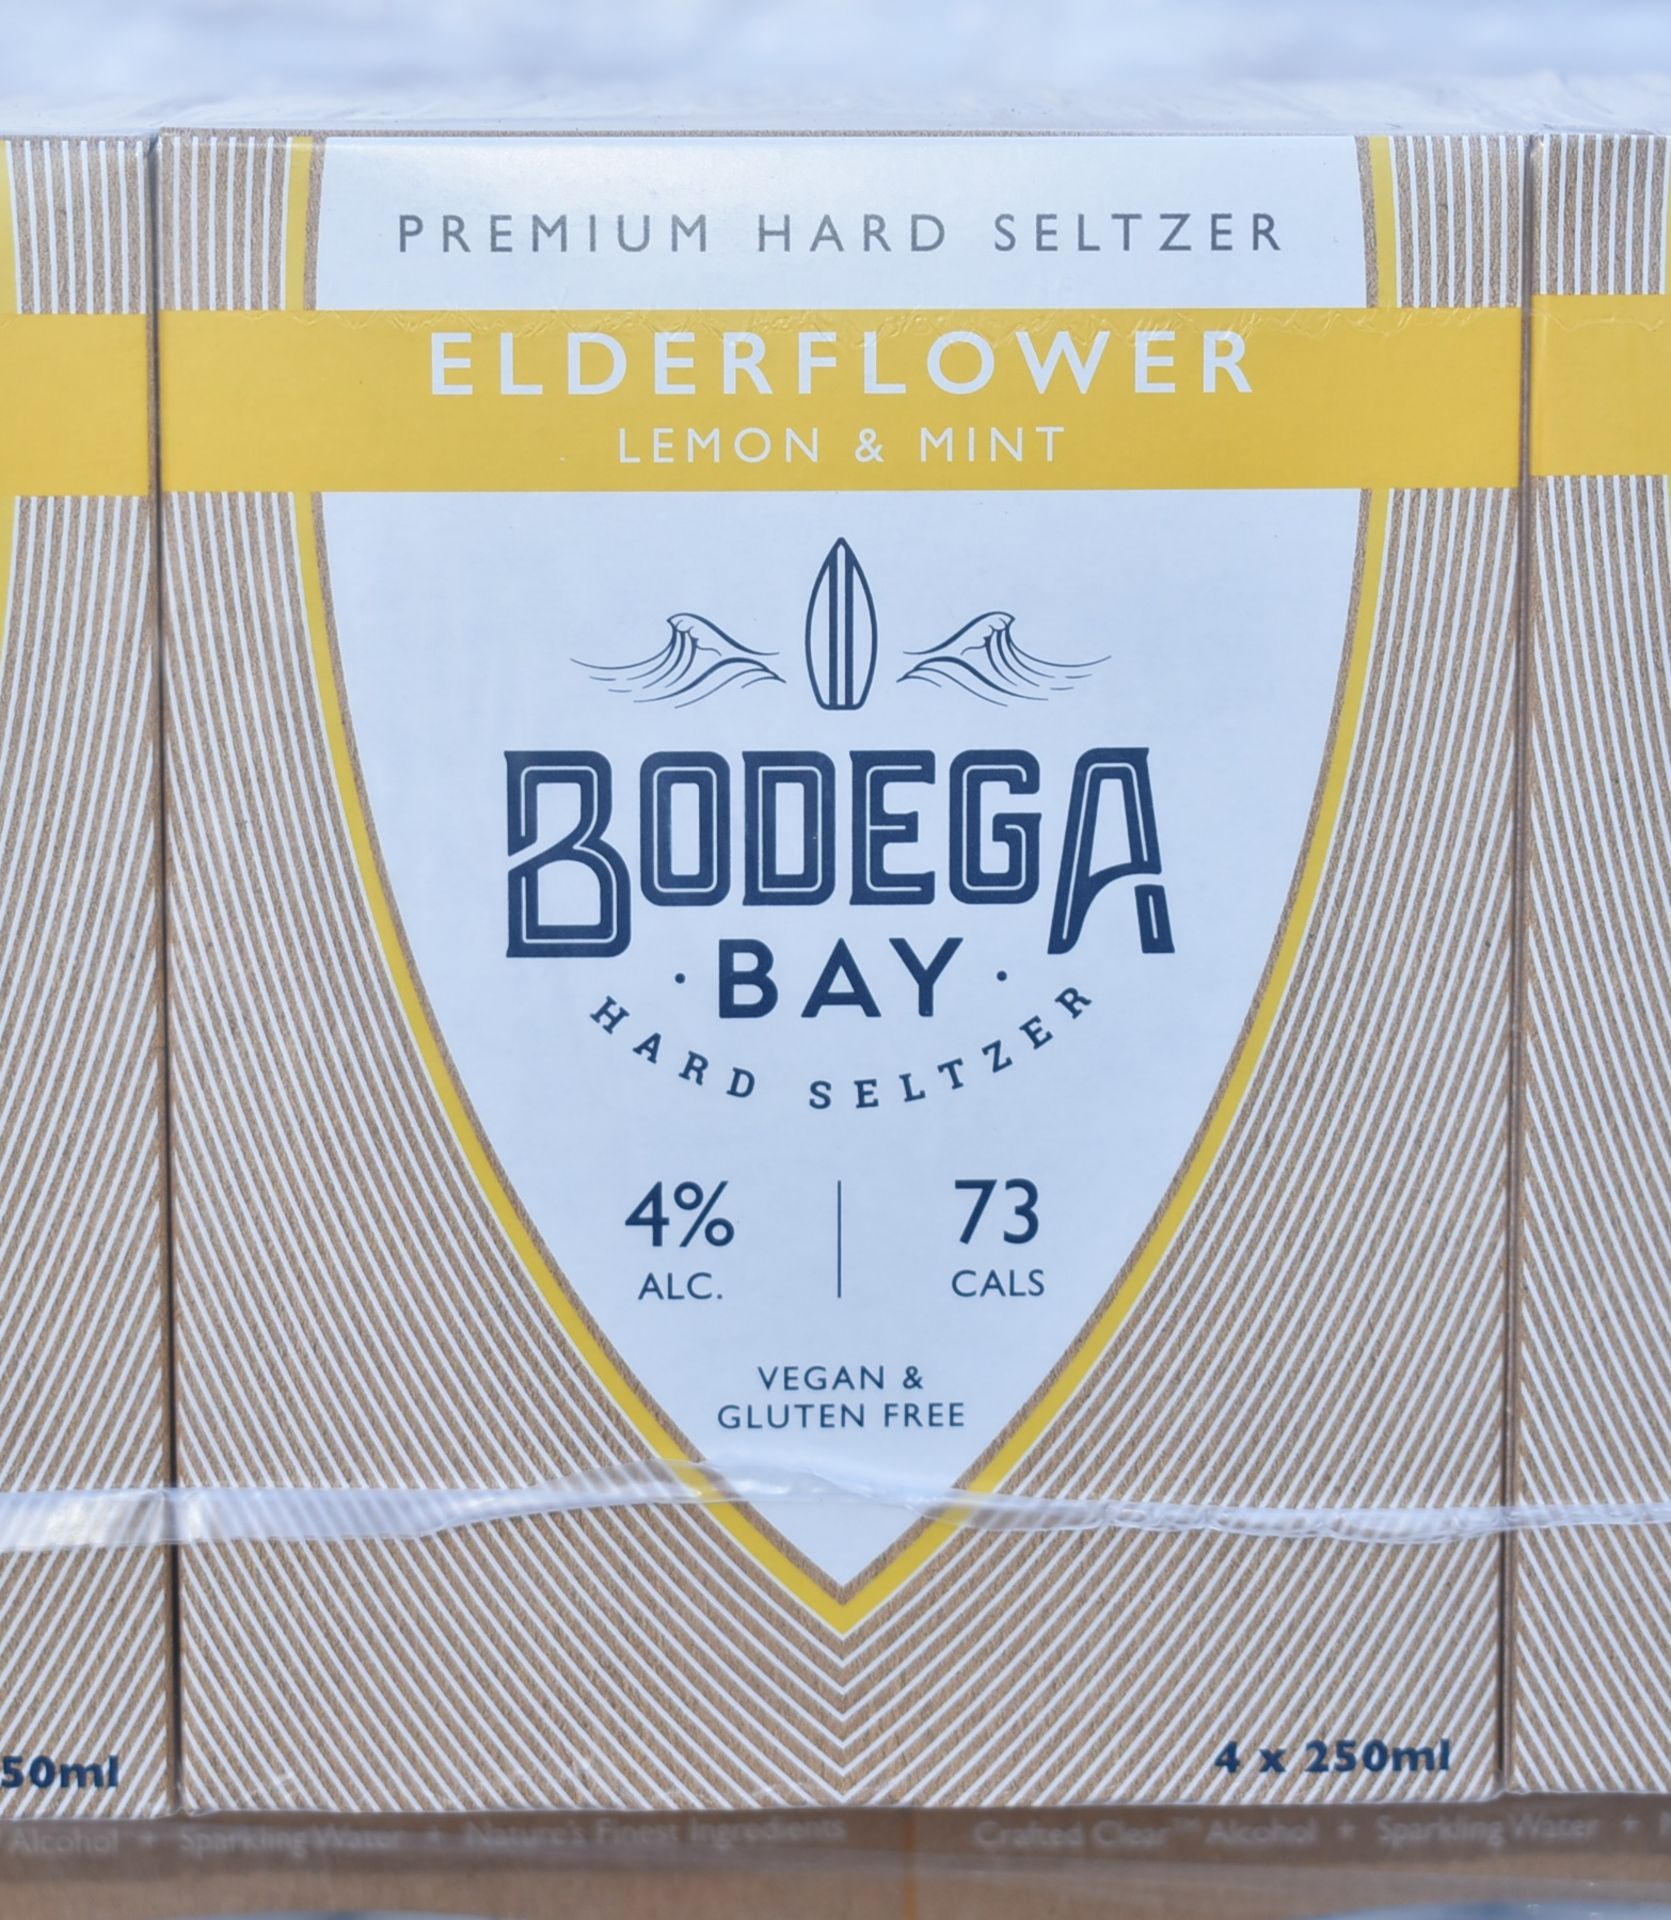 24 x Bodega Bay Hard Seltzer 250ml Alcoholic Sparkling Water Drinks - Elderflower Lemon & Mint